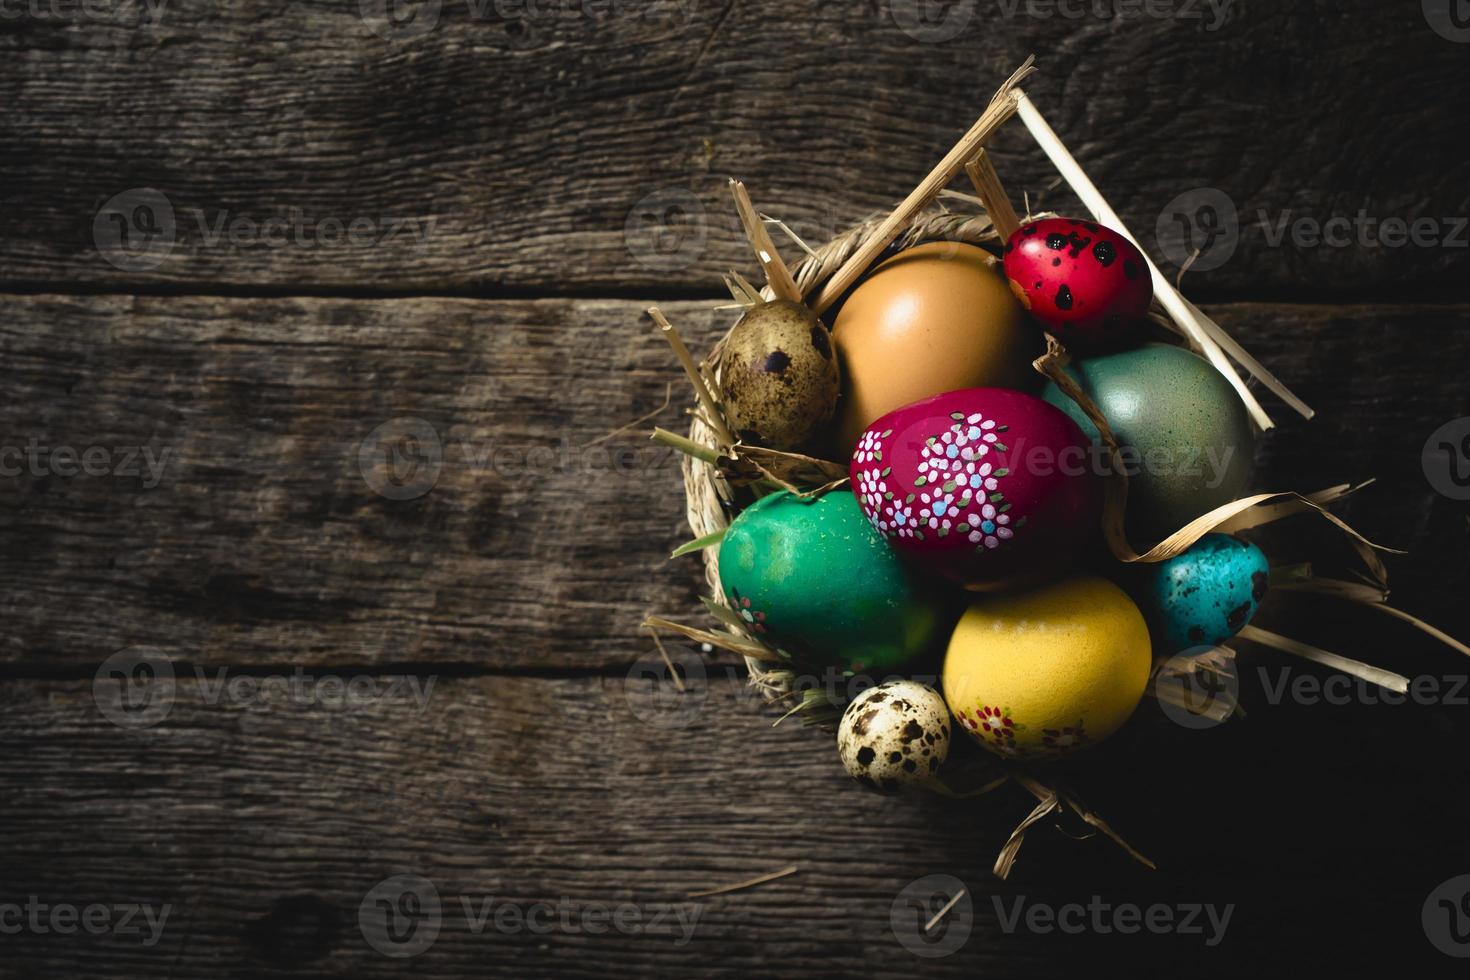 huevos de Pascua foto